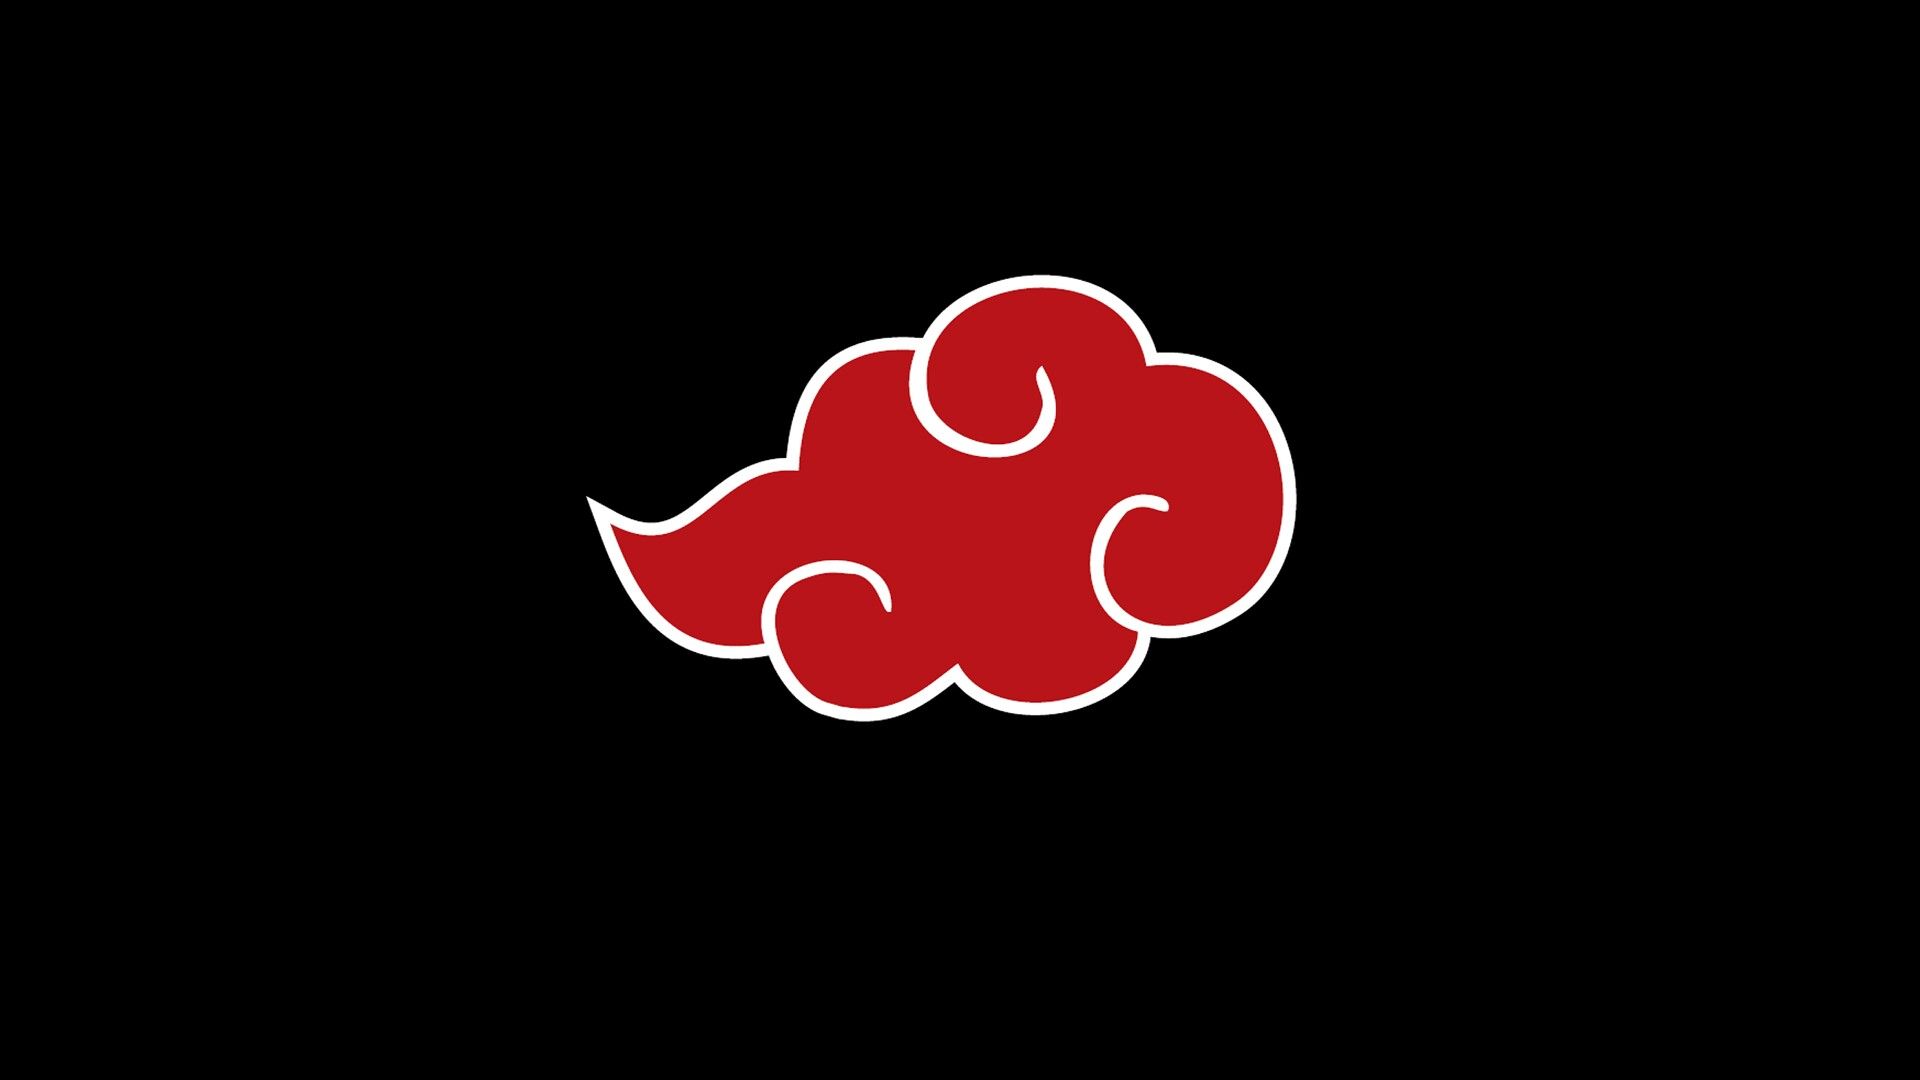 Akatsuki logo. Desenhos aleatórios, Desenhos, Ideias de tatuagens